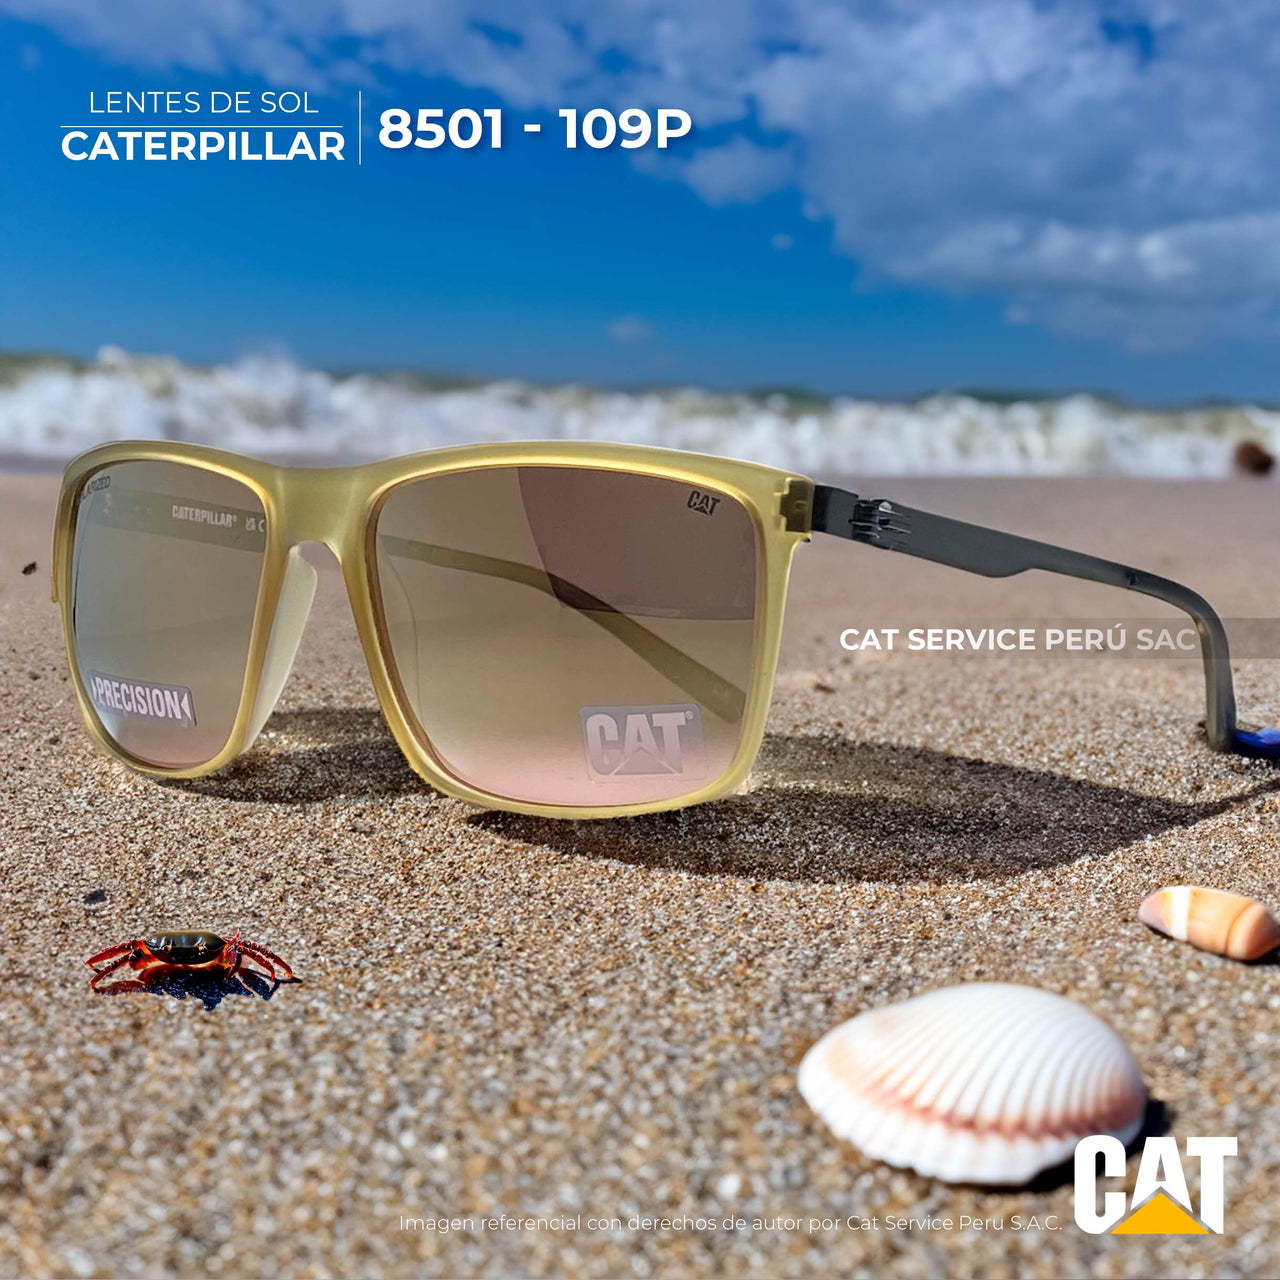 कैट सीपीएस-8501-109पी ध्रुवीकृत ब्राउन मून्स धूप का चश्मा 